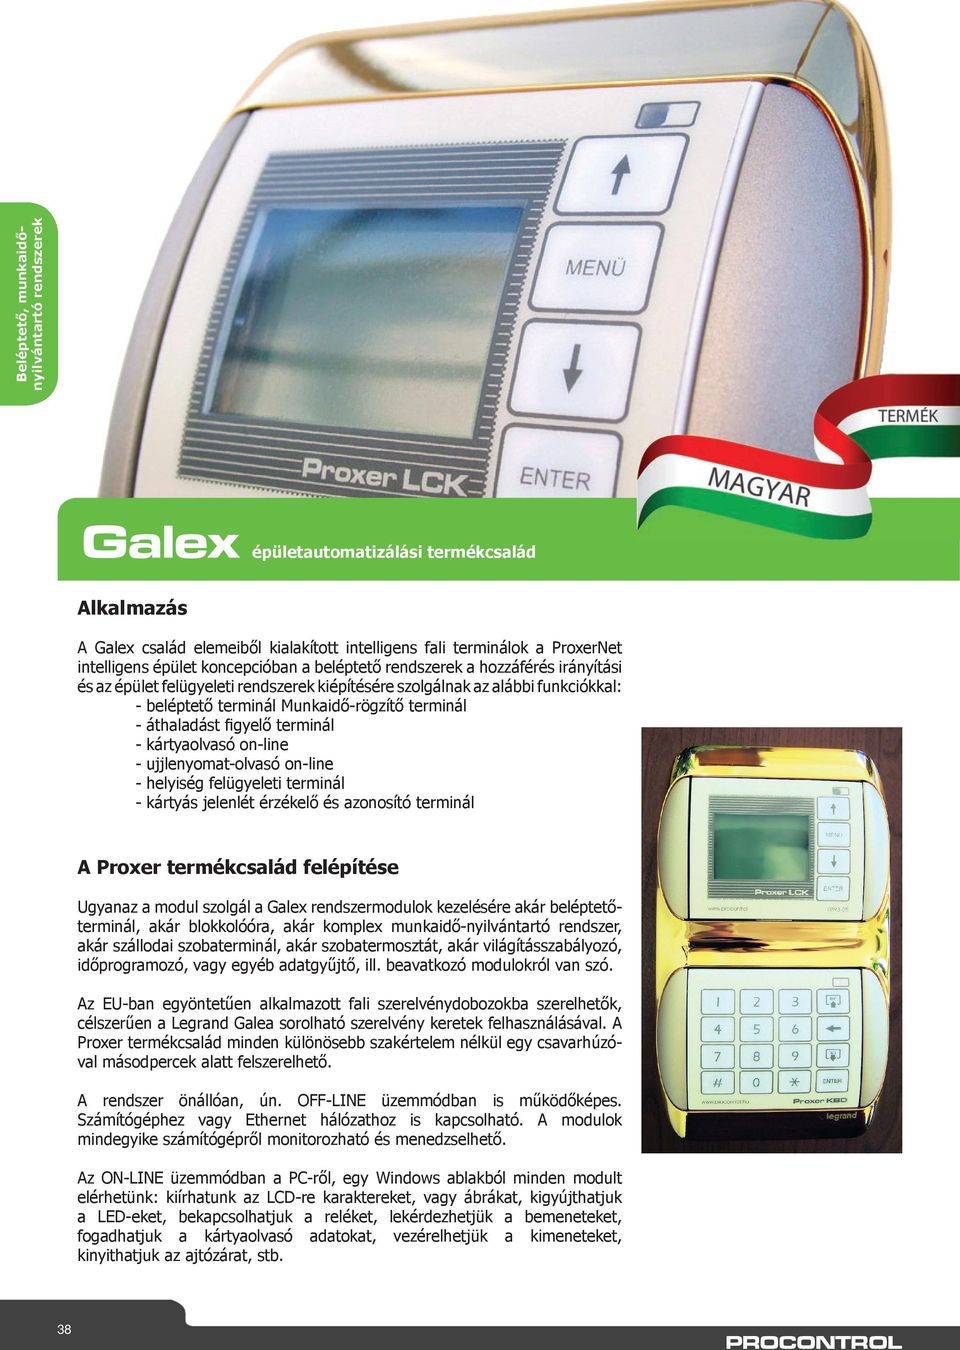 on-line - ujjlenyomat-olvasó on-line - helyiség felügyeleti terminál - kártyás jelenlét érzékelő és azonosító terminál A Proxer termékcsalád felépítése Ugyanaz a modul szolgál a Galex rendszermodulok